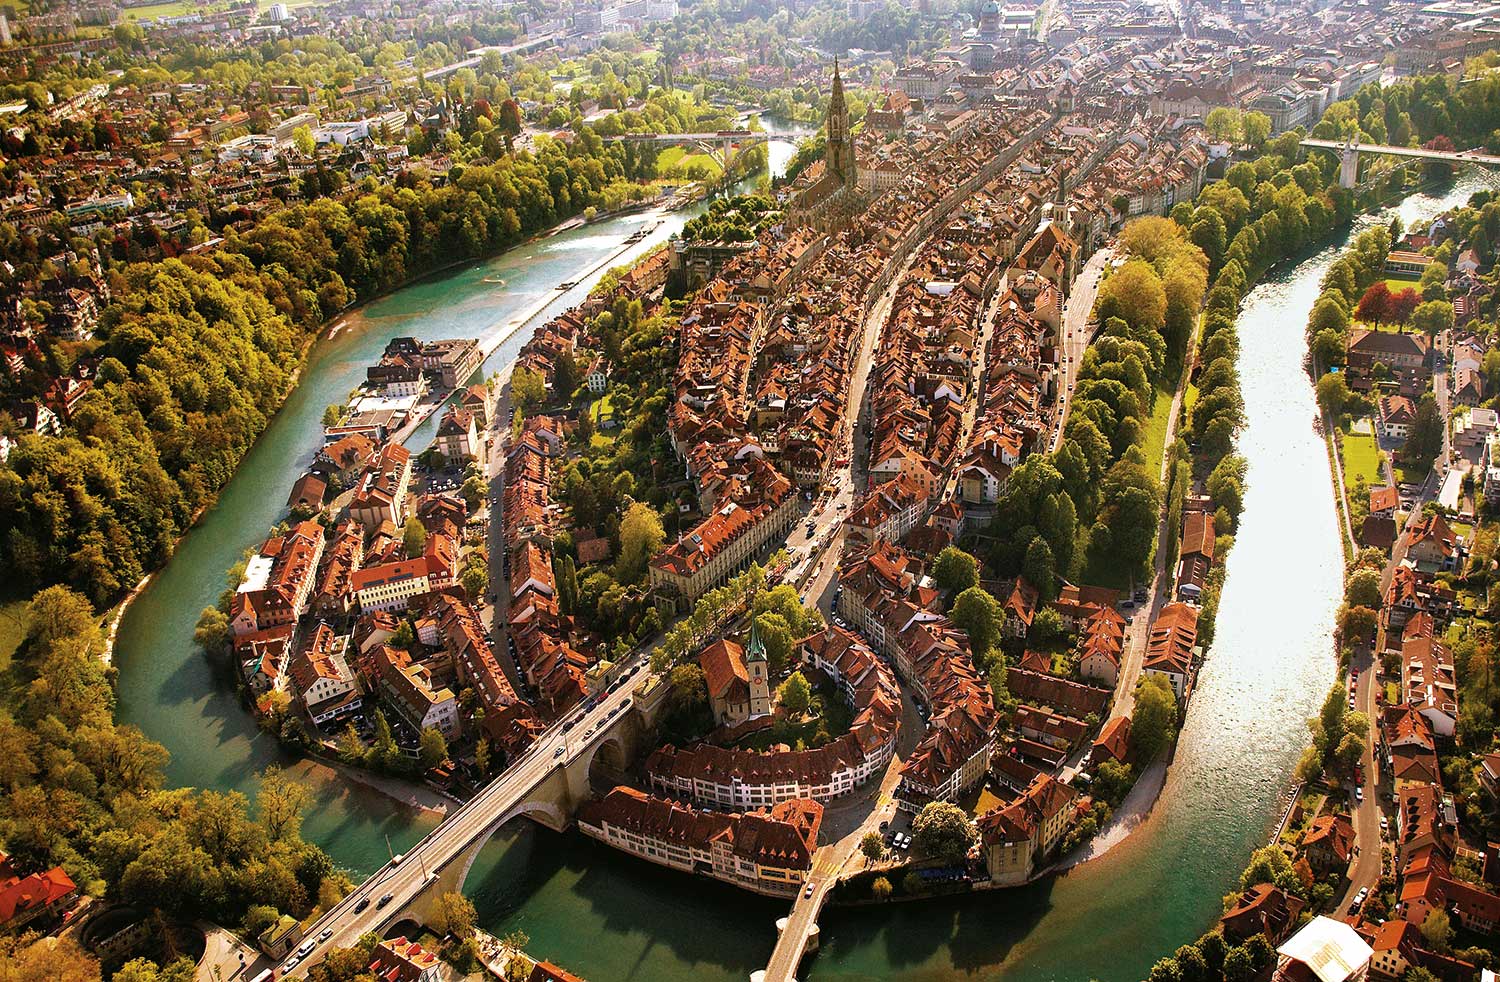 Hôtels dans la région de Berne-Une multitude d'attractions Berne est la capitale de la Suisse et sa région environnante est l’un